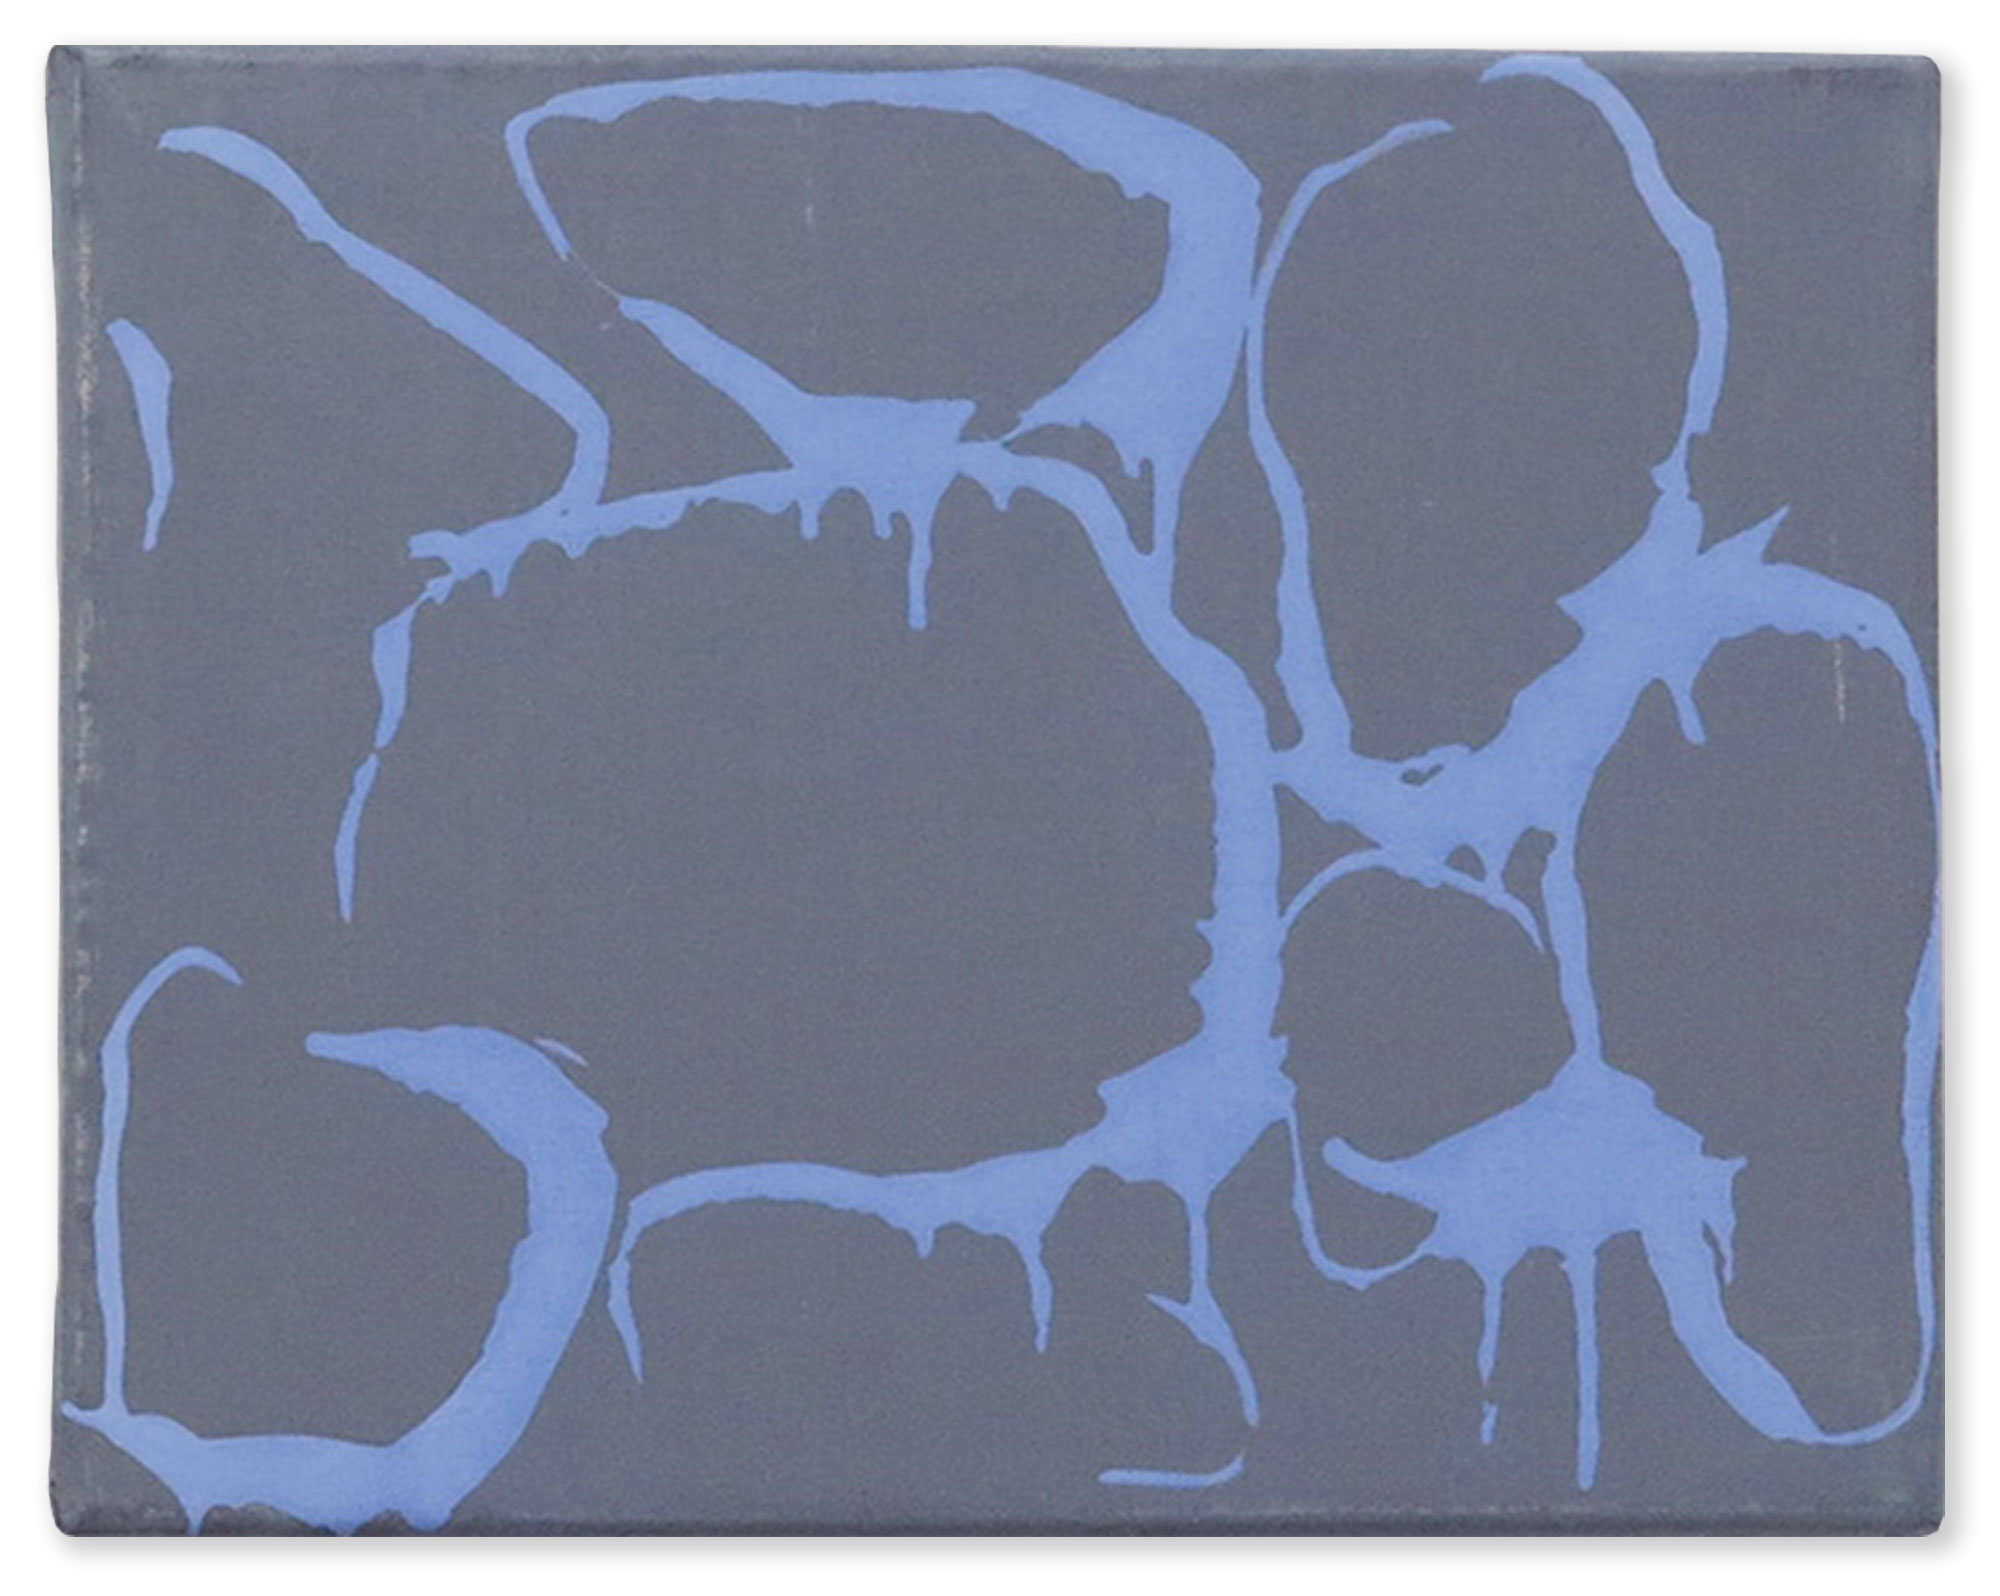 MO A11 / 2013, egg tempera on canvas, 24 x 30 cm